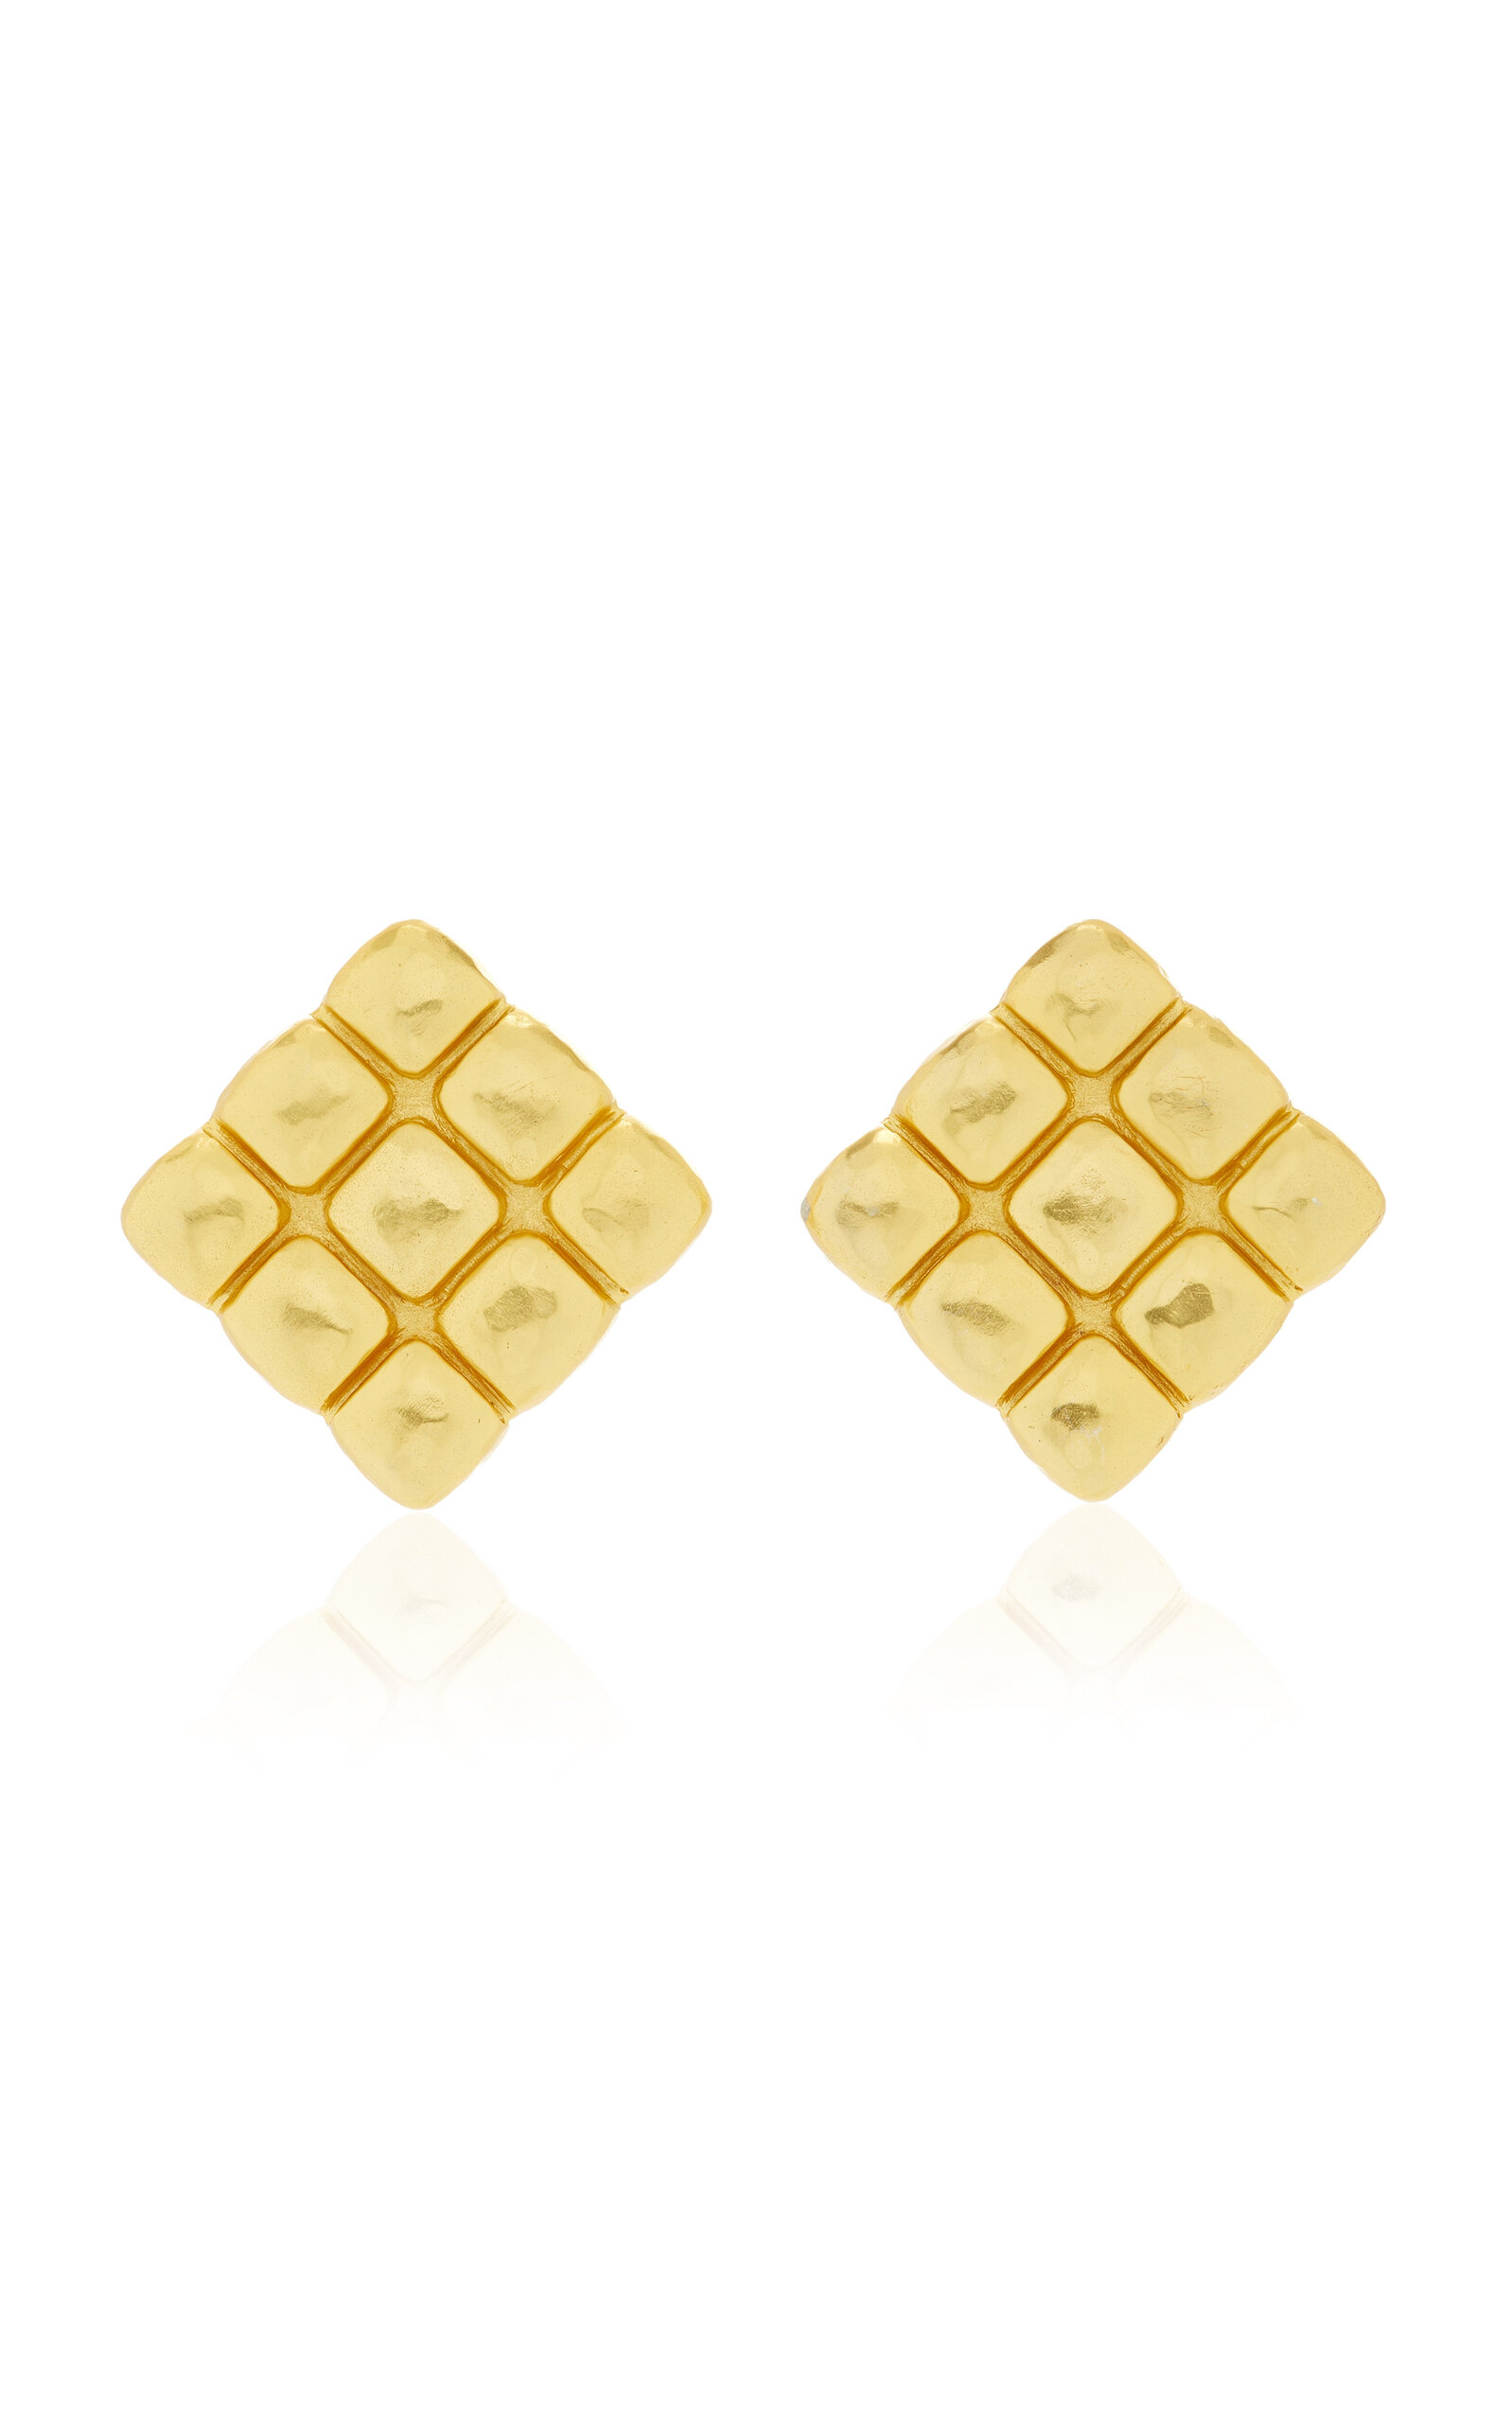 Valére Helen 24k Gold-plated Earrings